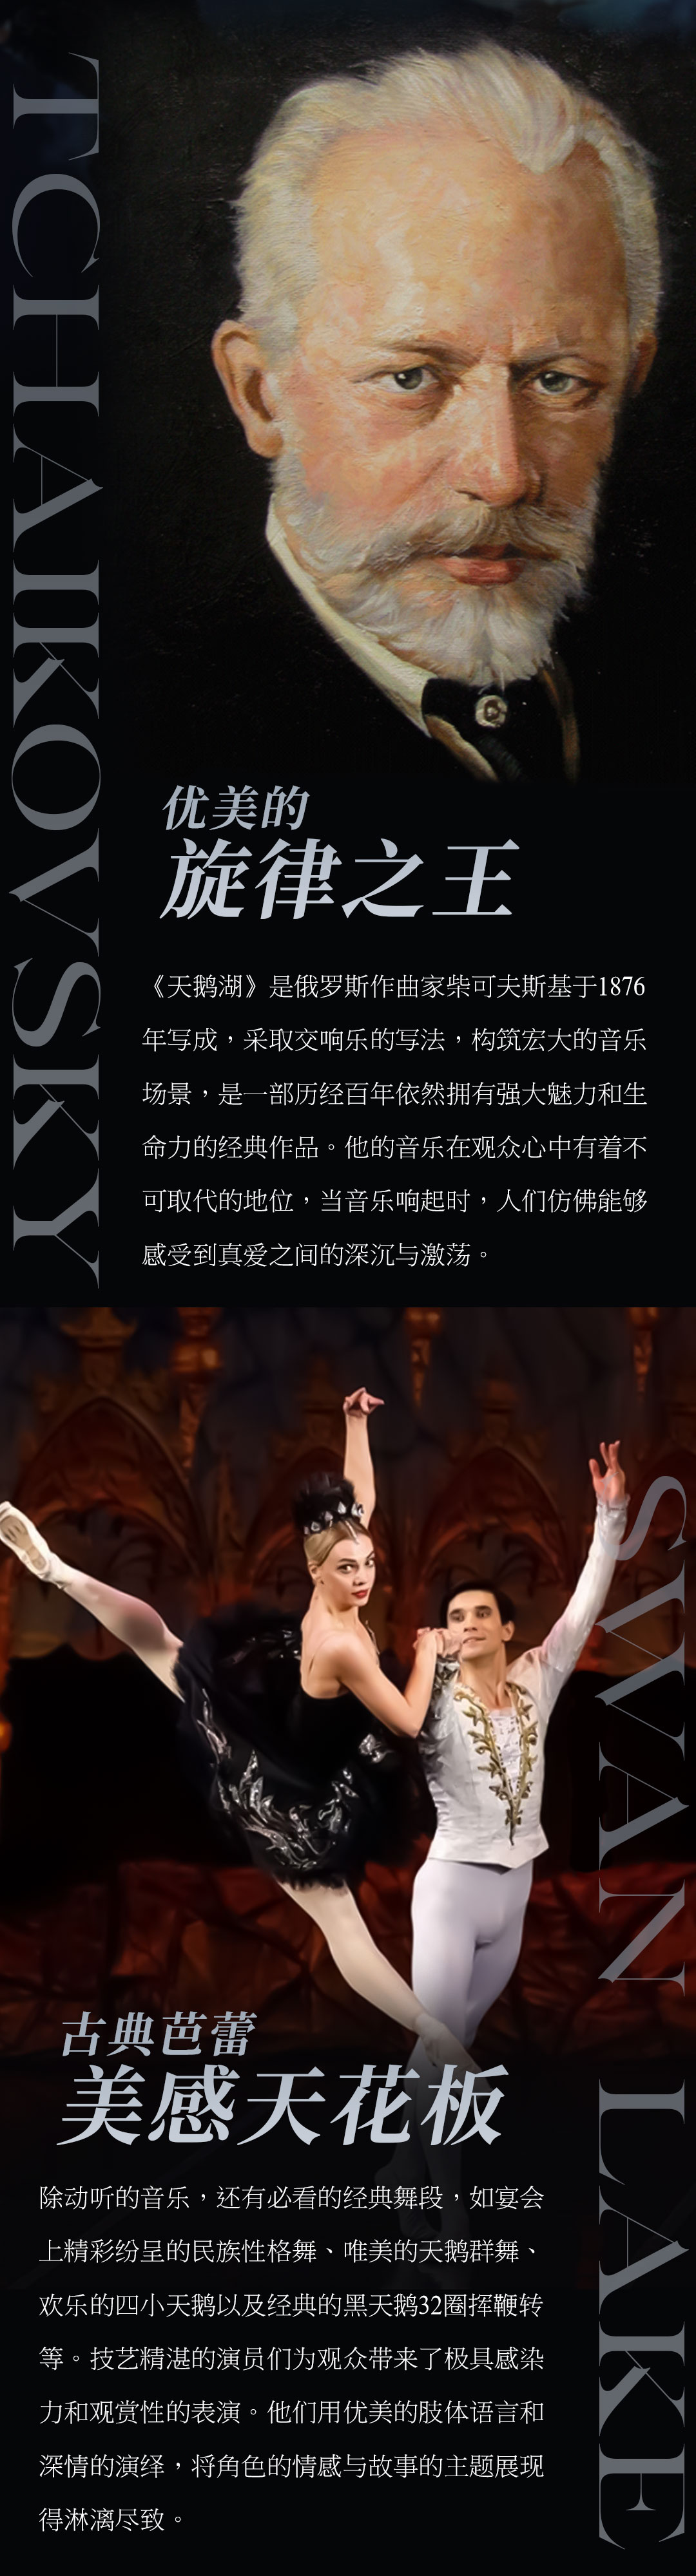 俄罗斯莫斯科芭蕾舞团 芭蕾舞剧《天鹅湖》